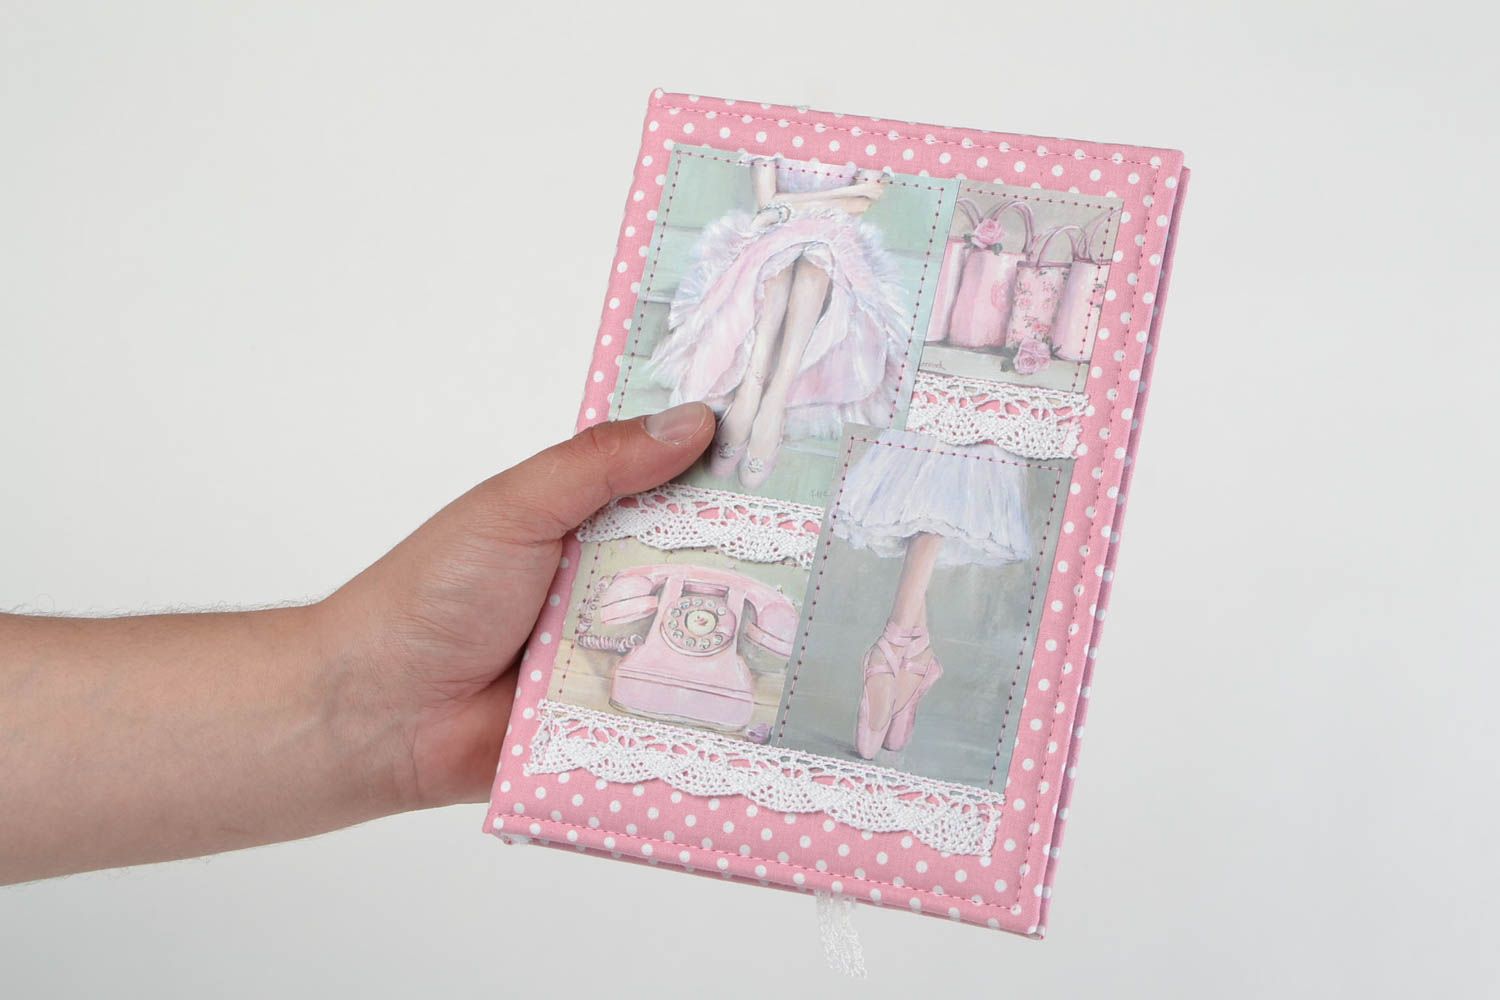 Скрап блокнот ручной работы в тканевой обложке для девушки розовый романтический фото 2